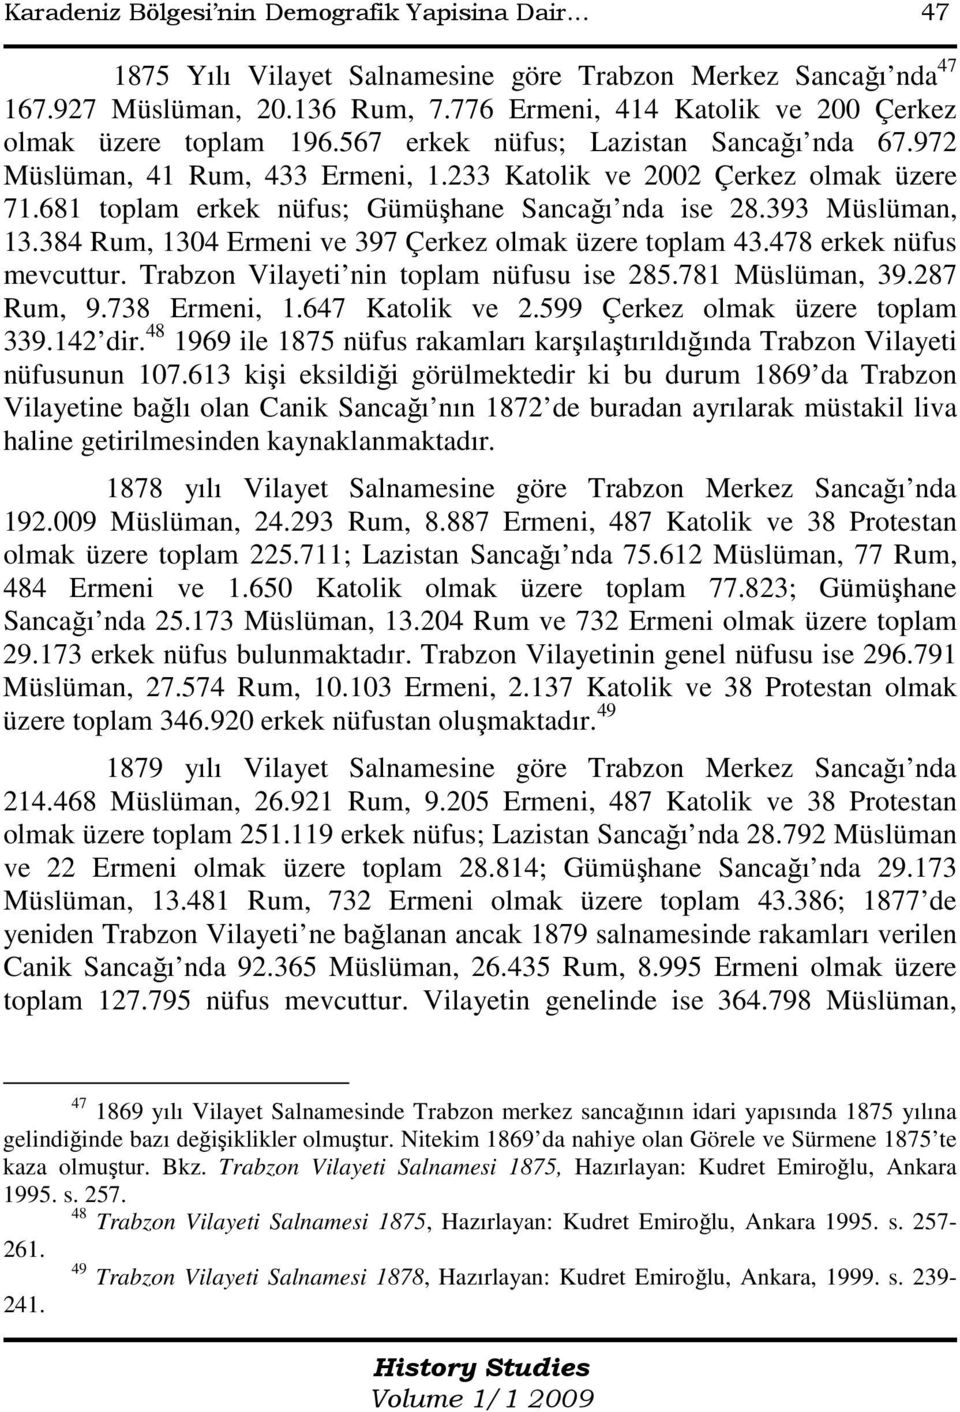 681 toplam erkek nüfus; Gümüşhane Sancağı nda ise 28.393 Müslüman, 13.384 Rum, 1304 Ermeni ve 397 Çerkez olmak üzere toplam 43.478 erkek nüfus mevcuttur. Trabzon Vilayeti nin toplam nüfusu ise 285.